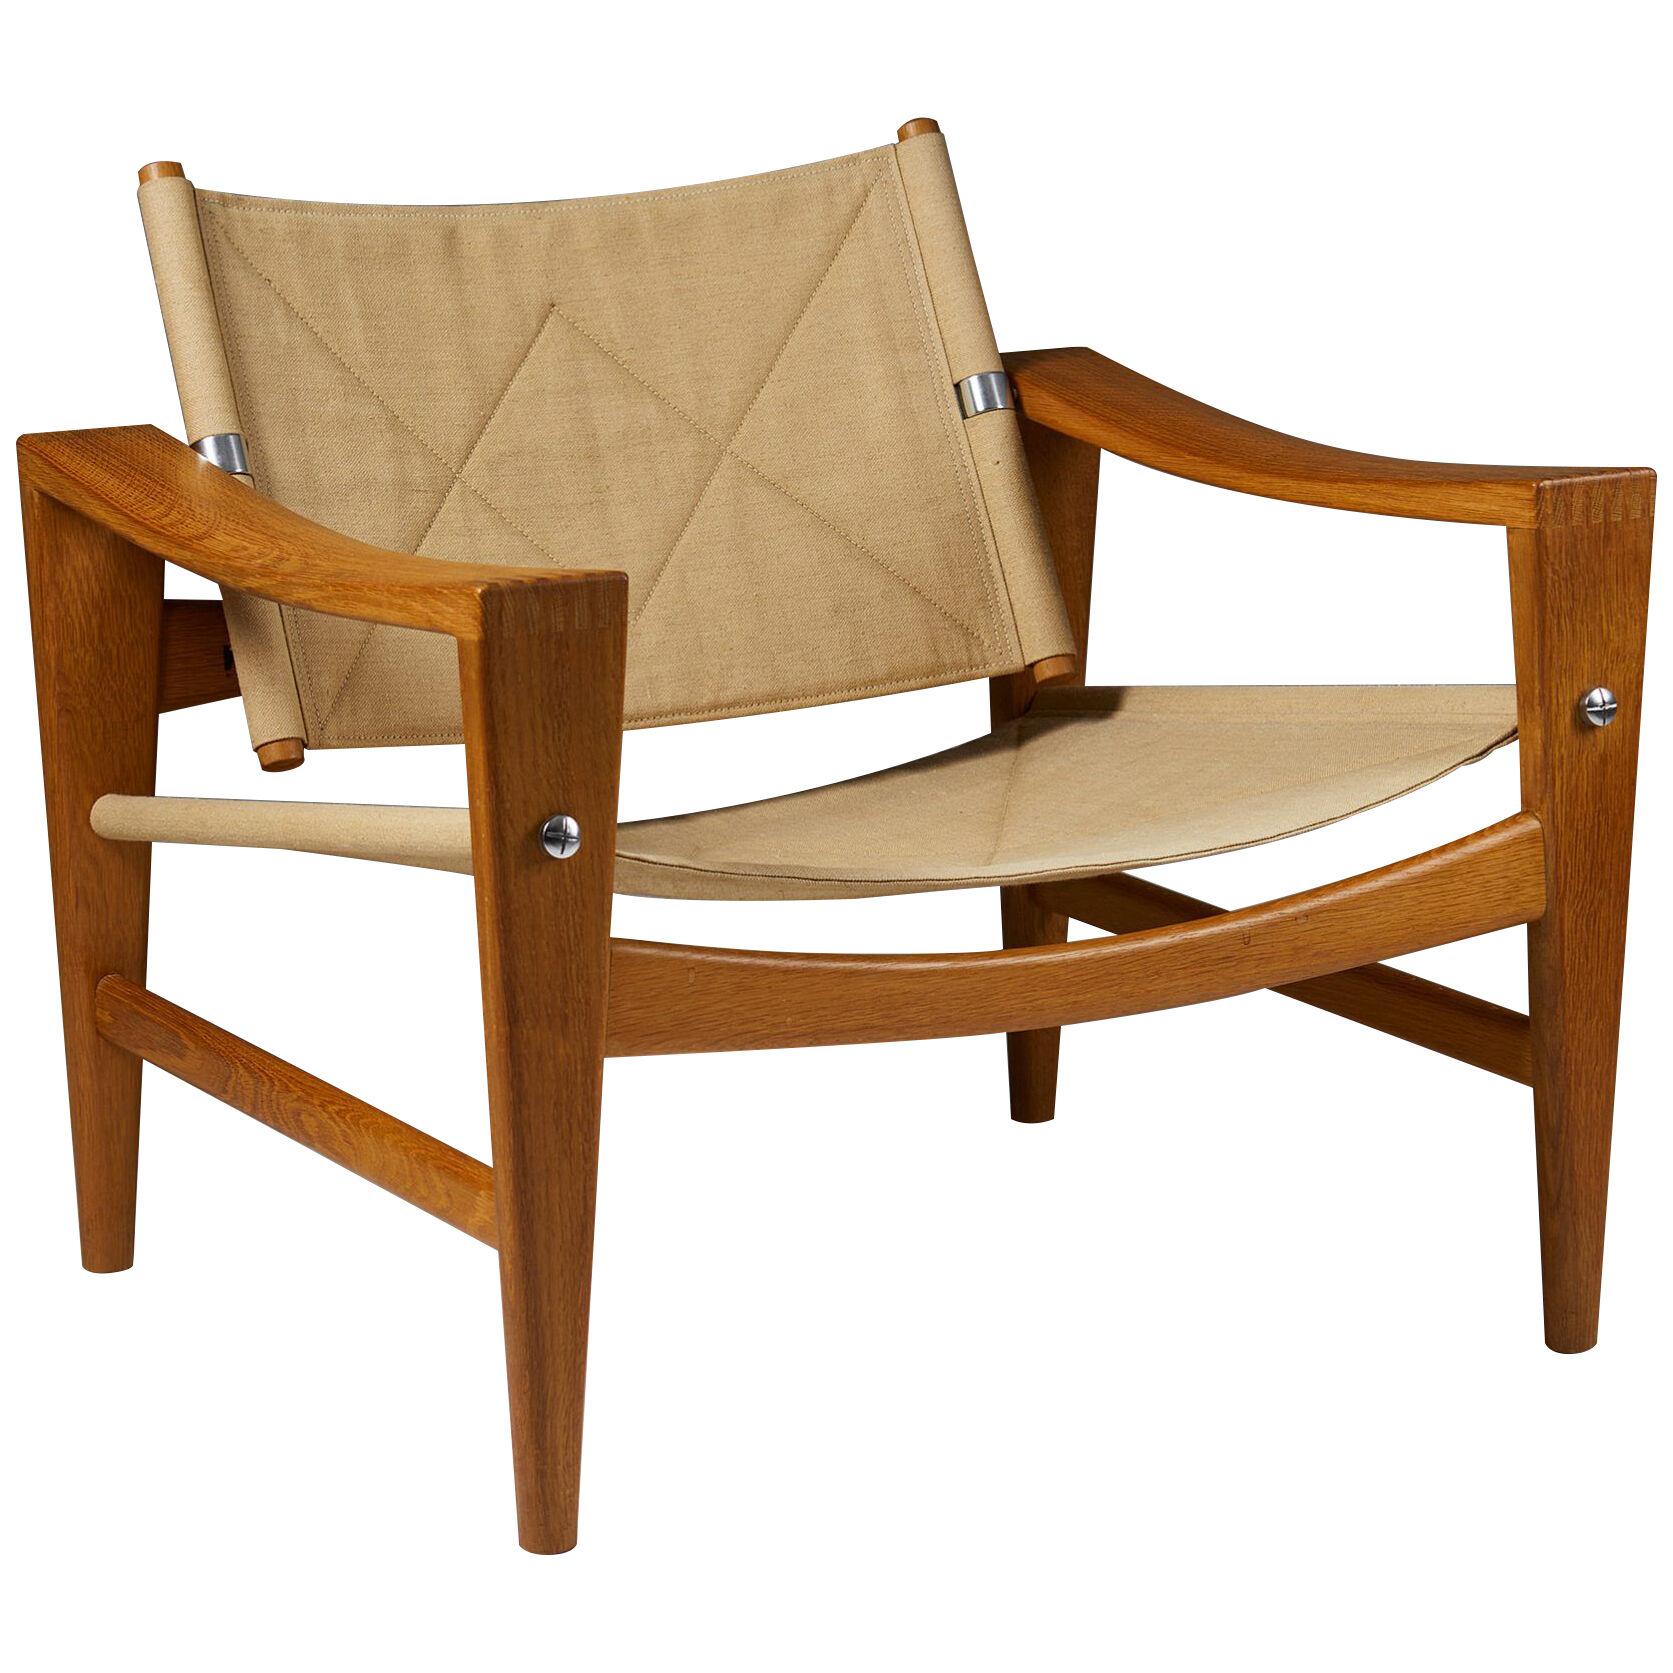 Armchair designed by Hans J. Wegner for Johannes Hansen, Denmark. 1950's.